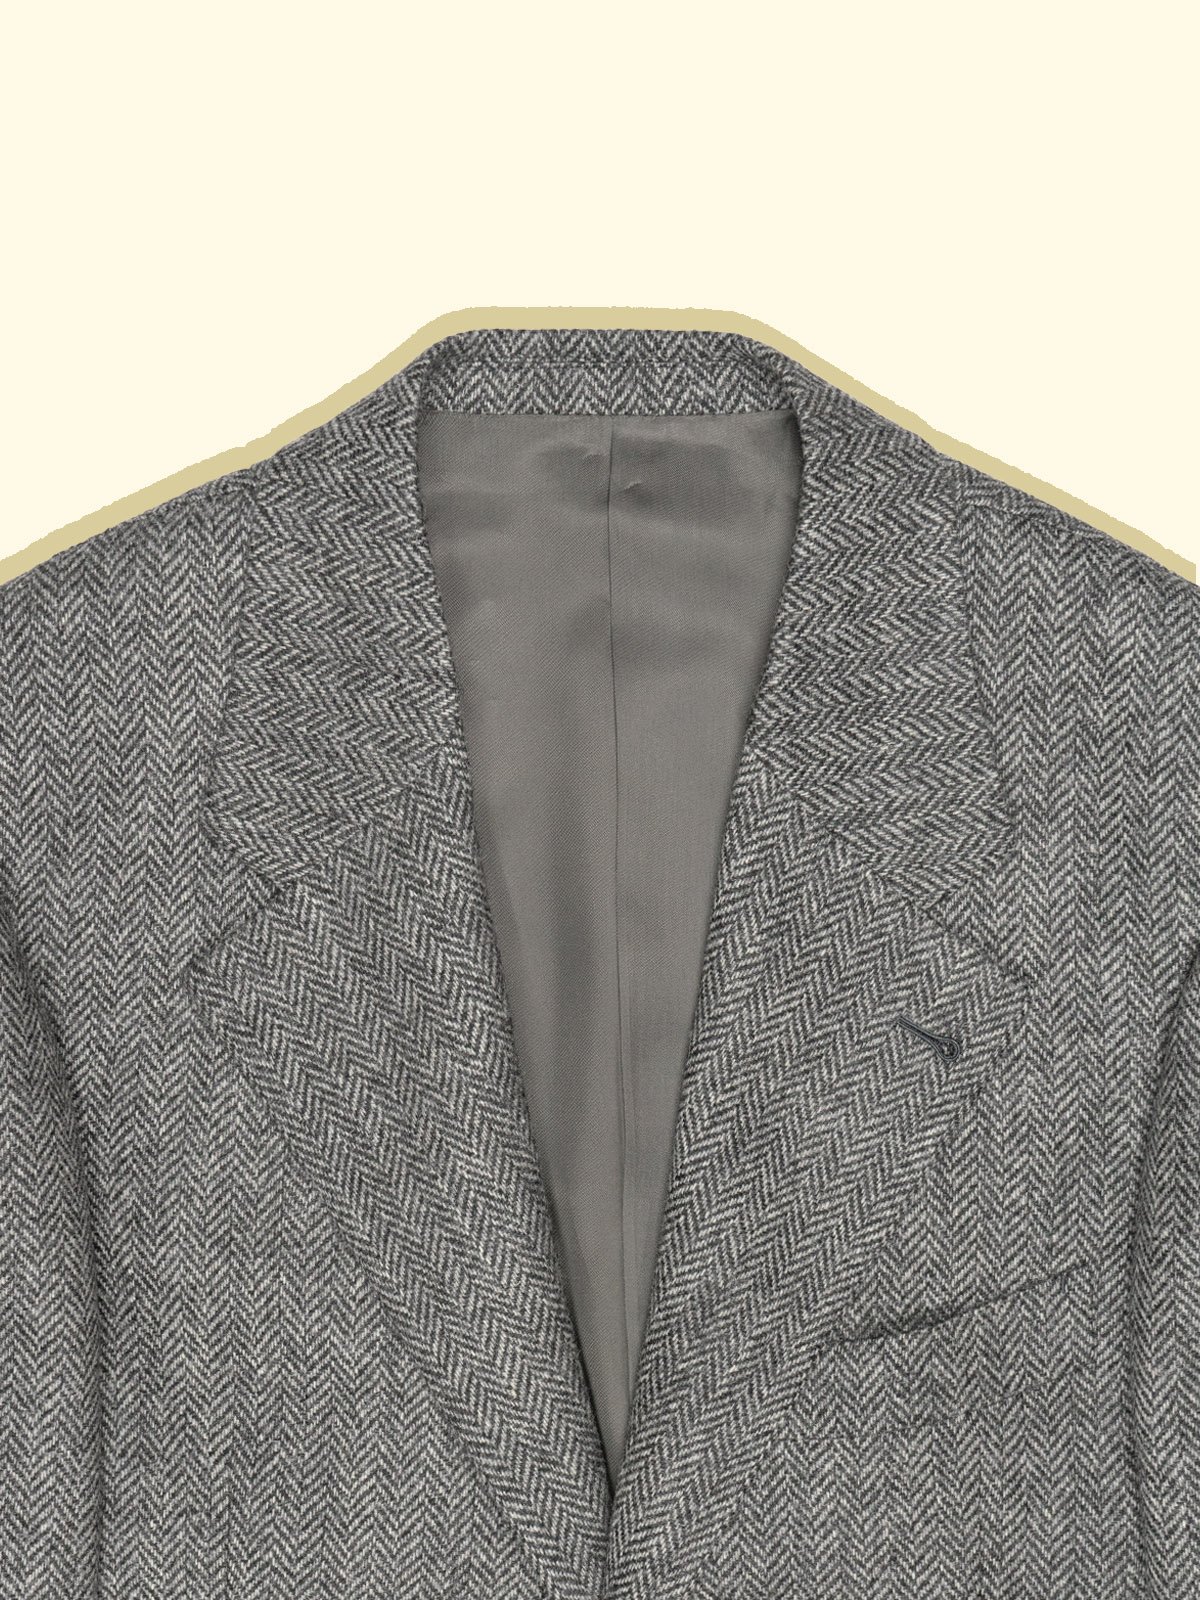 Wool Tweed Sport Jacket - Grey Herringbone — The Anthology